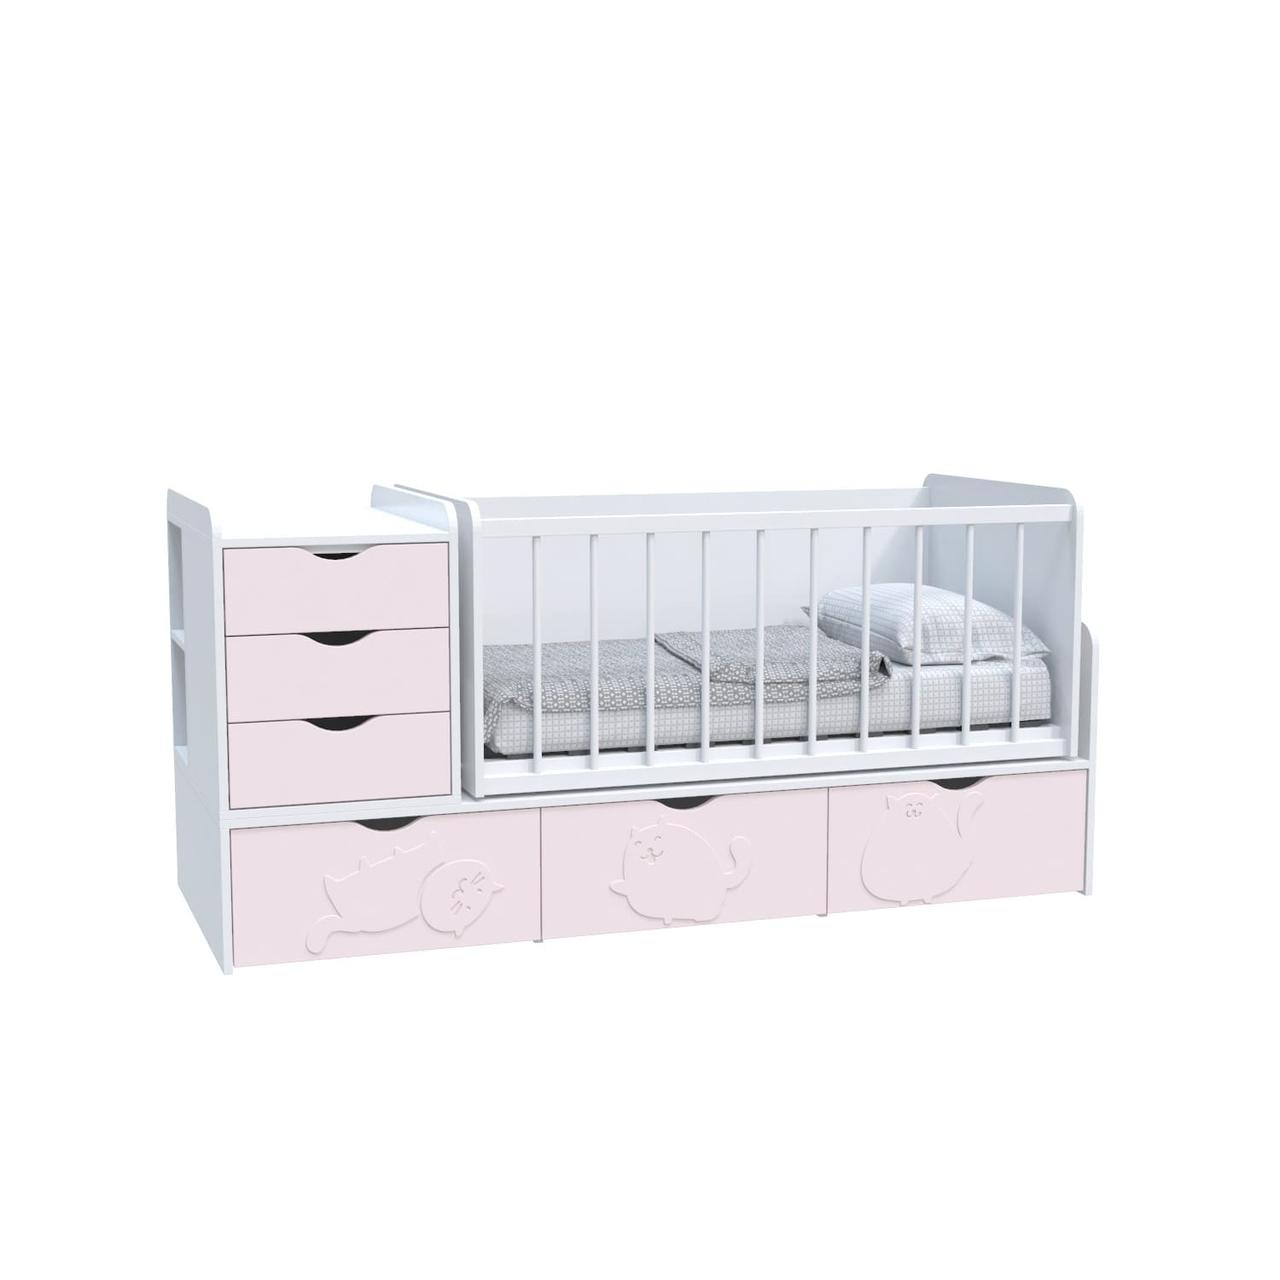 Ліжко дитяче Binky ДС504А (3 в 1) Art In Head 1732x950x732 аляска та рожевий (МДФ) + решітка біла (110210237)